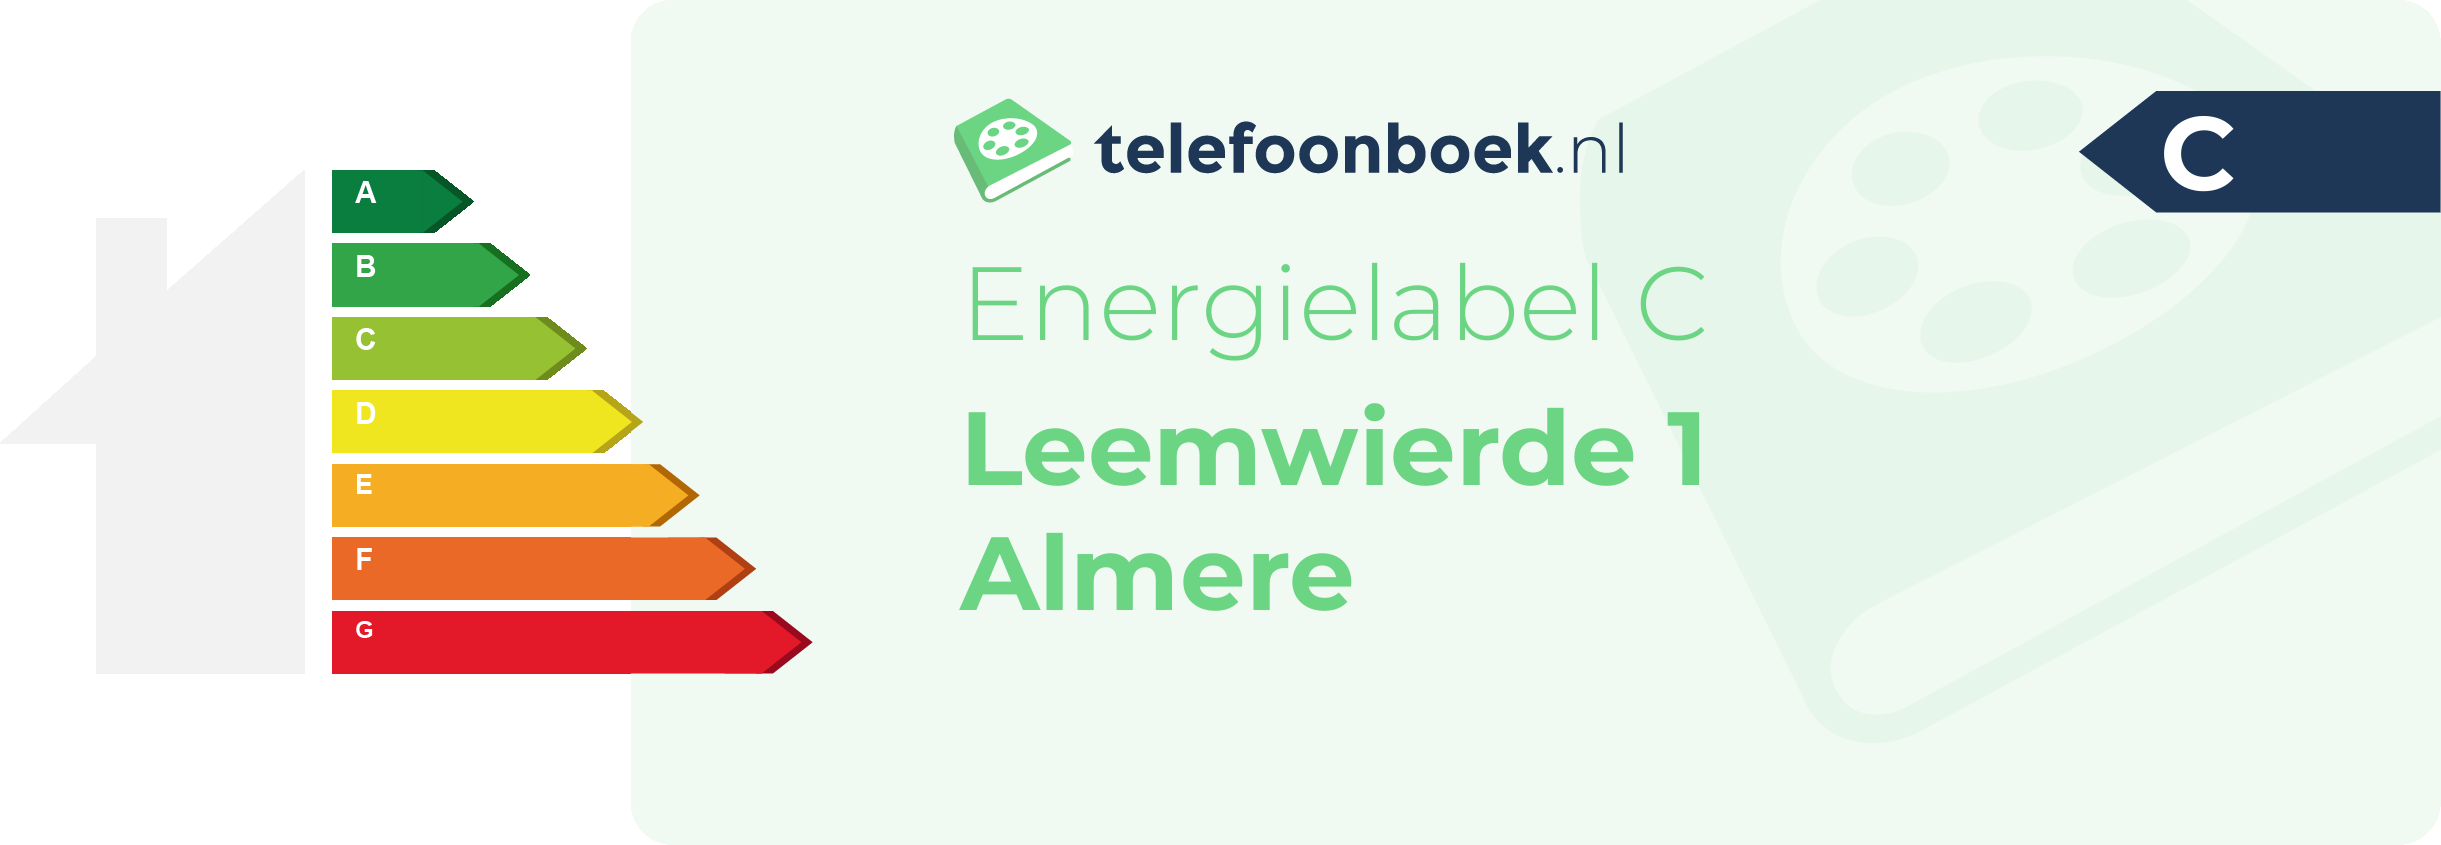 Energielabel Leemwierde 1 Almere